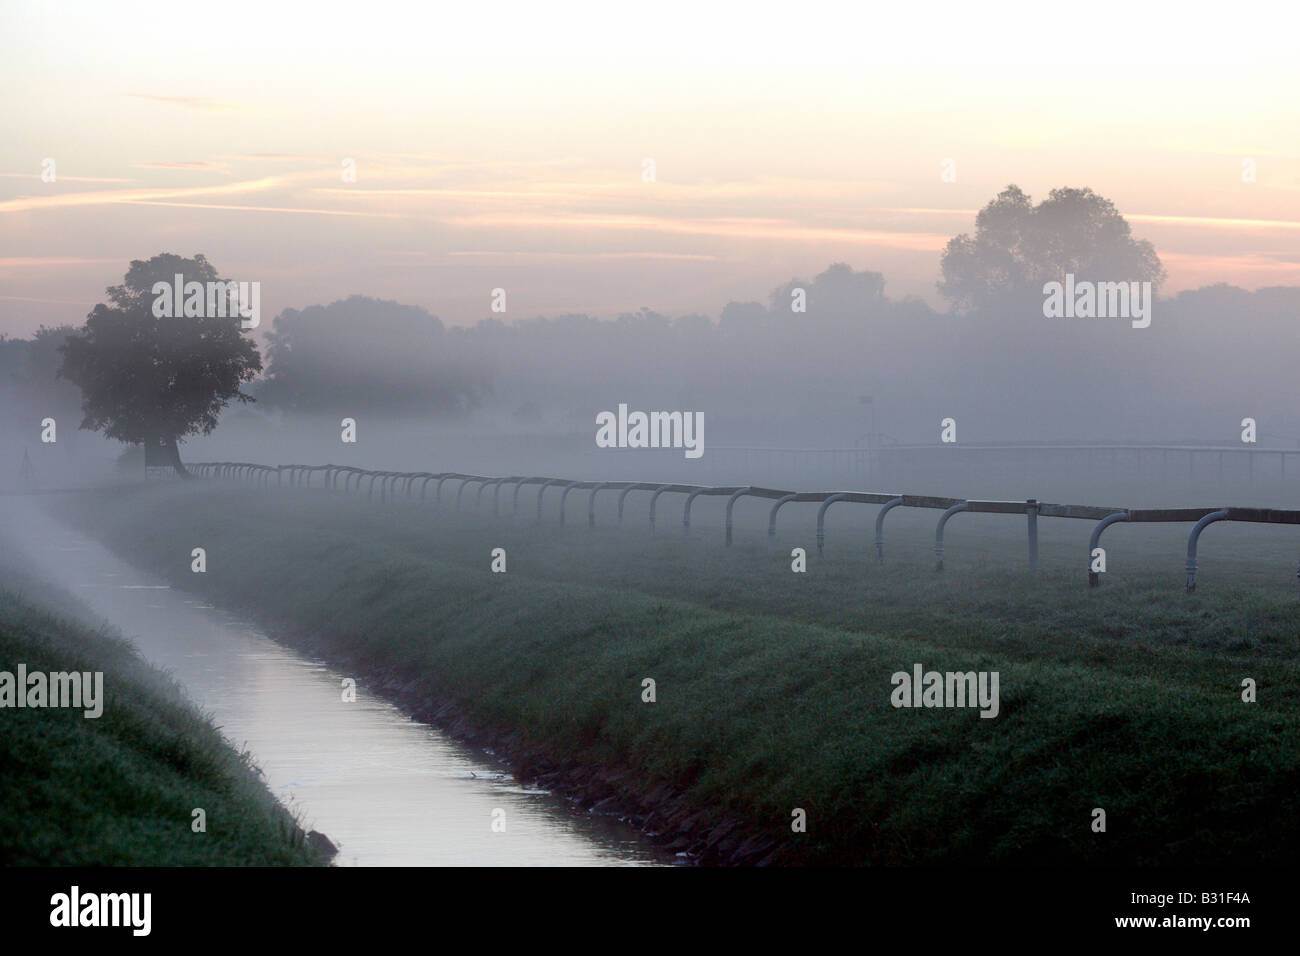 Paysage rural dans le brouillard, Iffezheim, Allemagne Banque D'Images